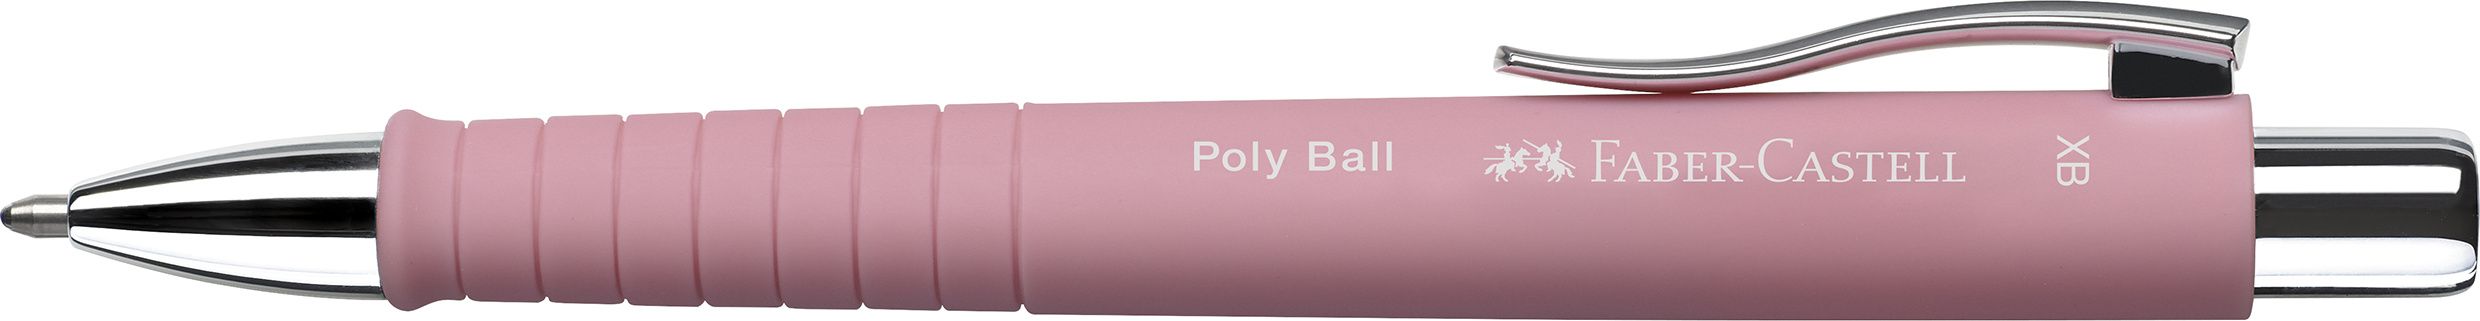 KUGELSCHREIBER POLY BALL XB, 0,5, ROSÉ